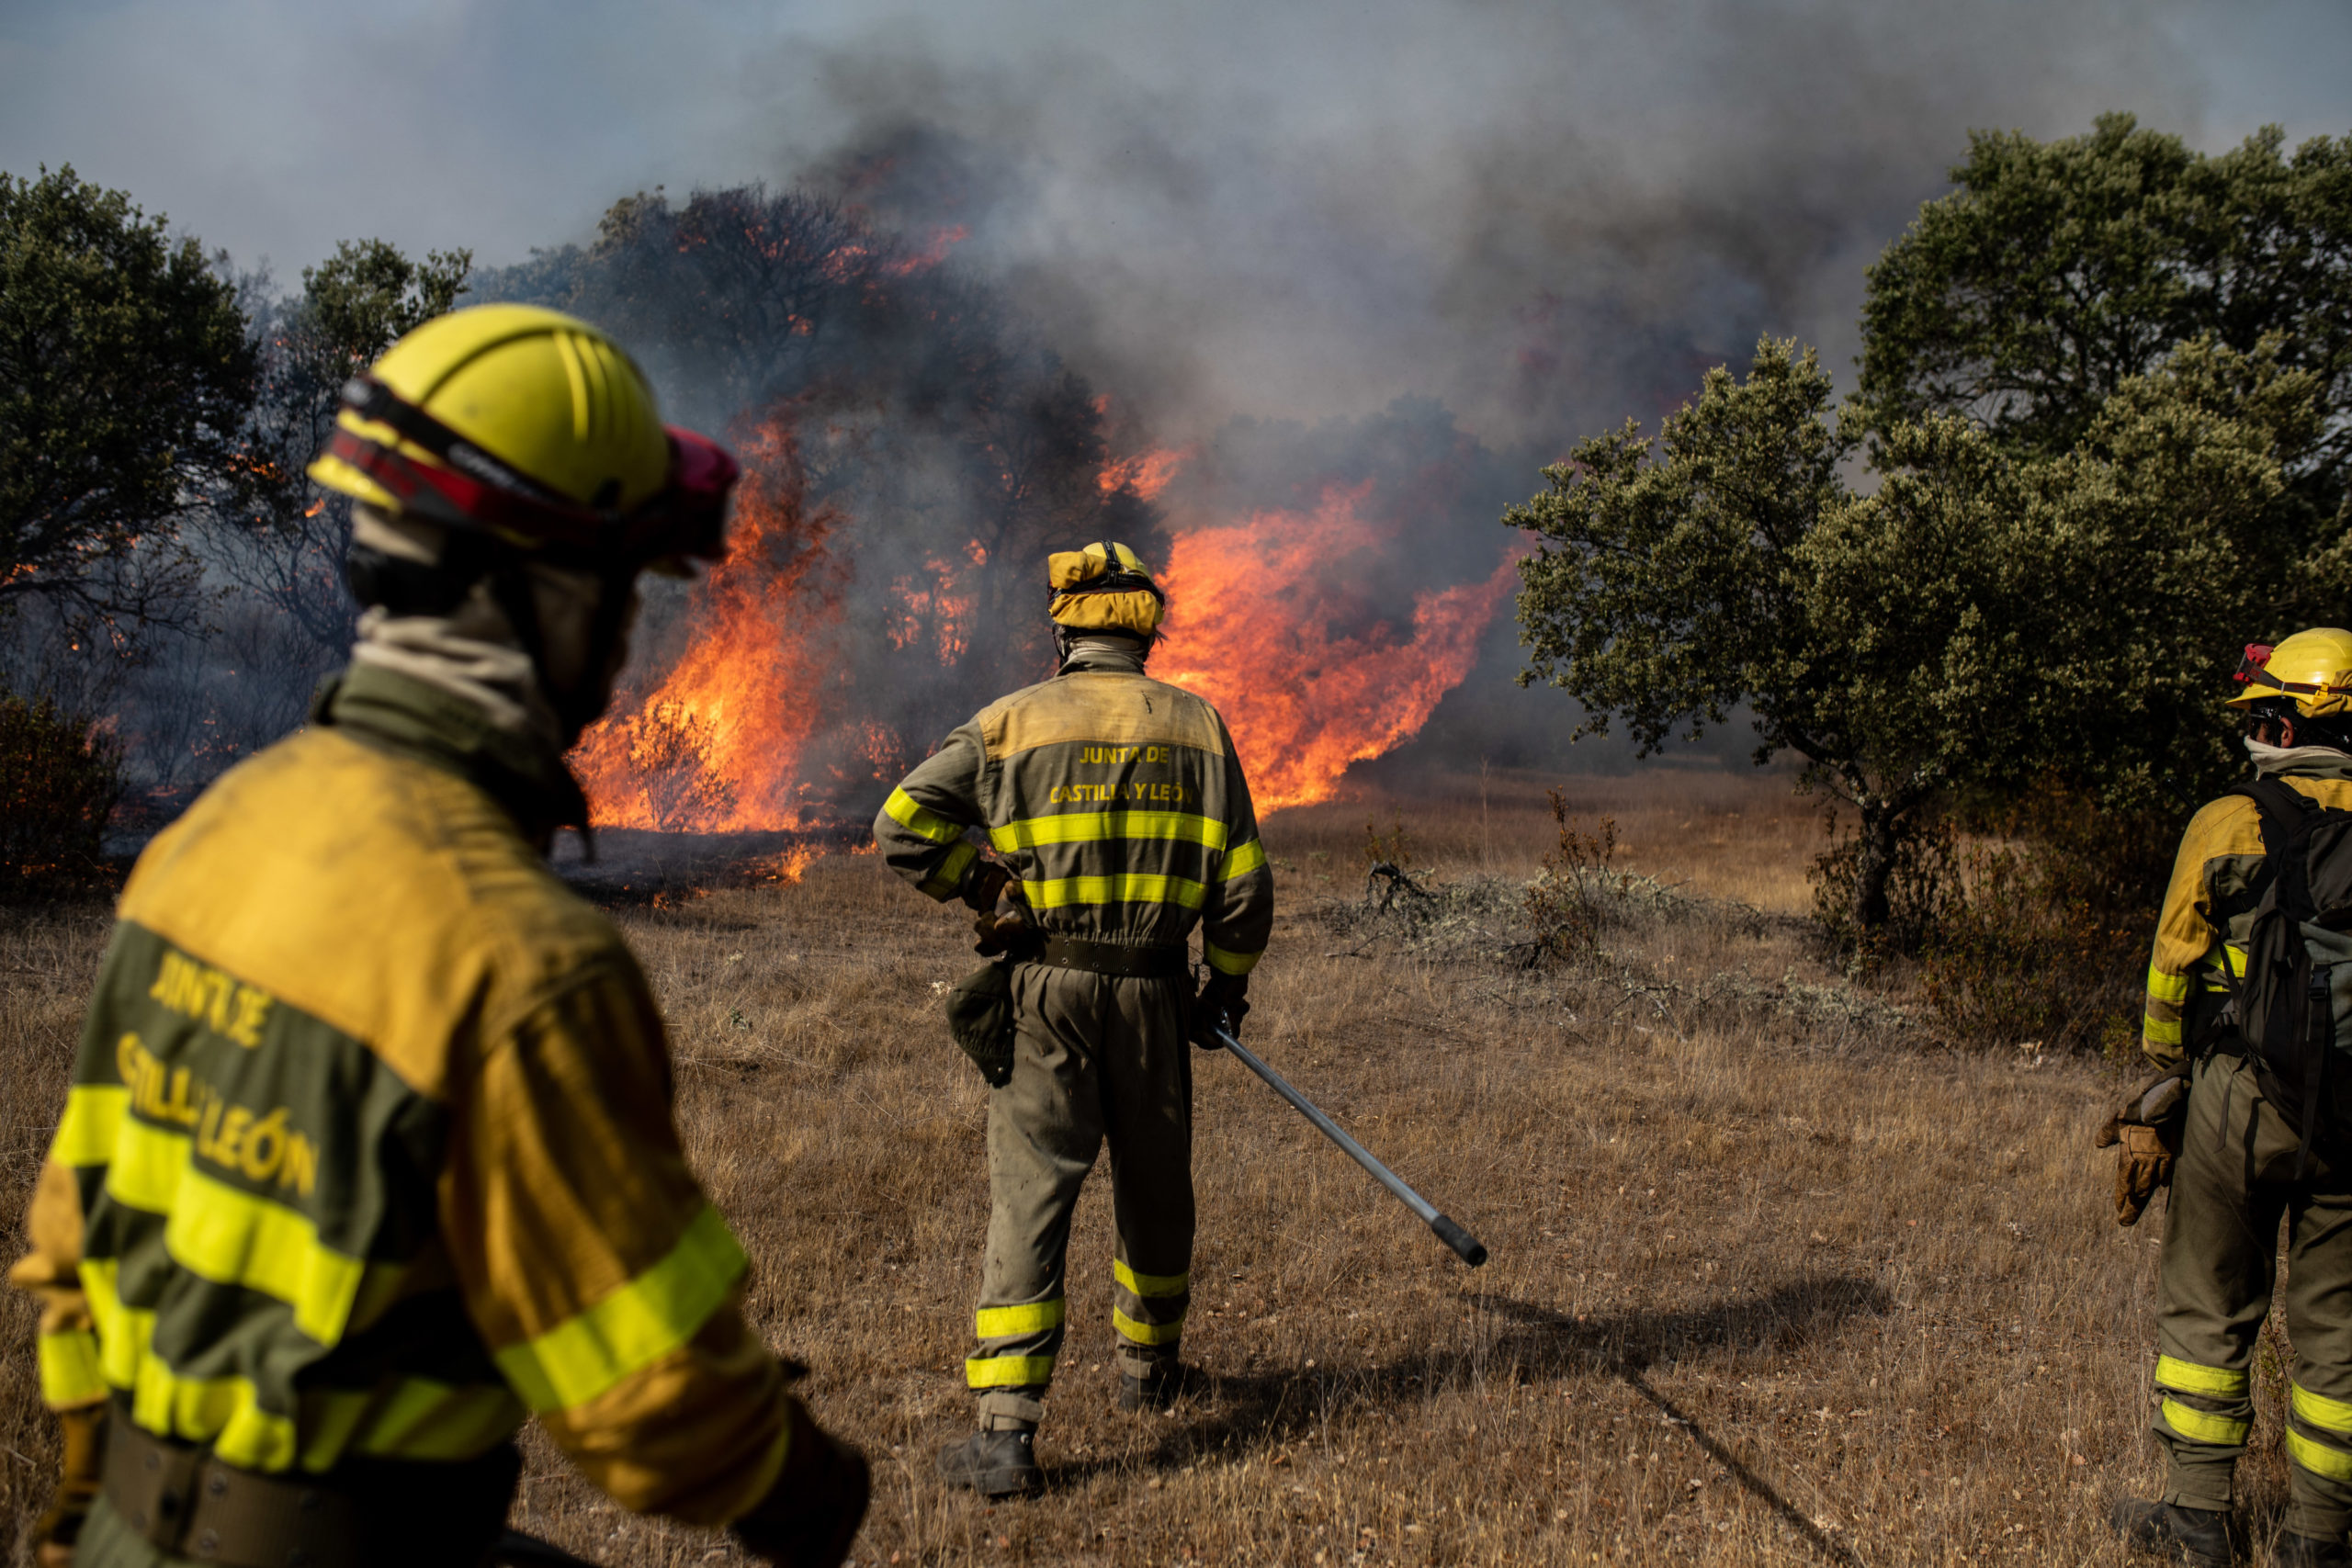 Castilla y León declara la alerta por los incendios forestales esta Semana Santa